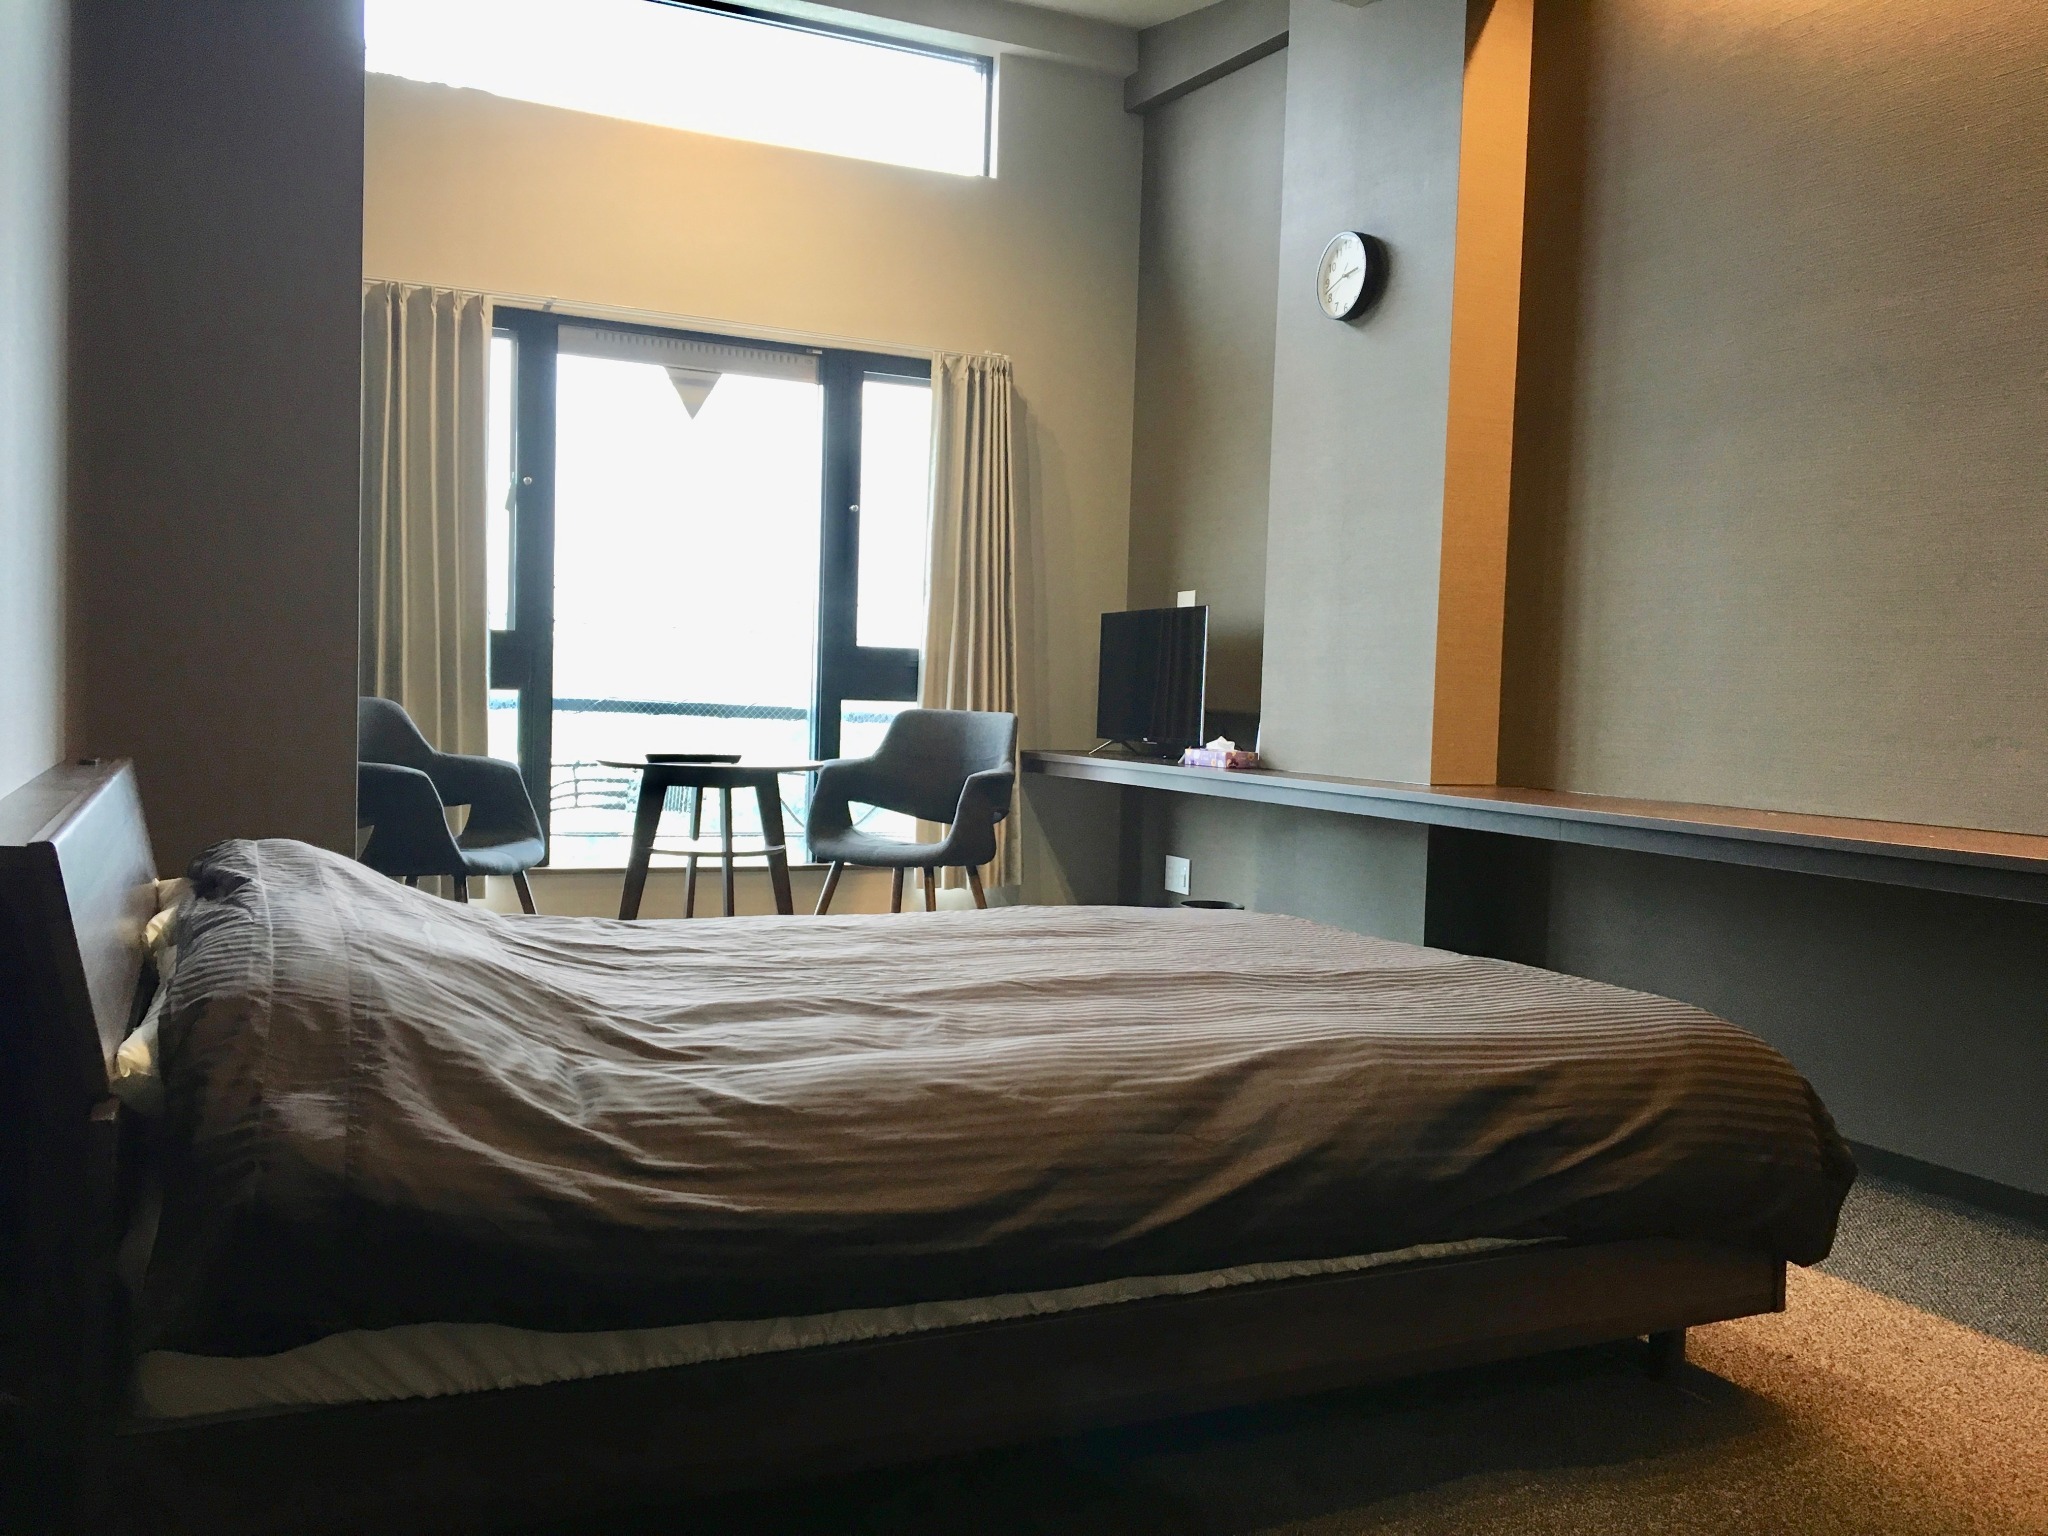 #201:ホテル仕様のお部屋でリラックスできる空間